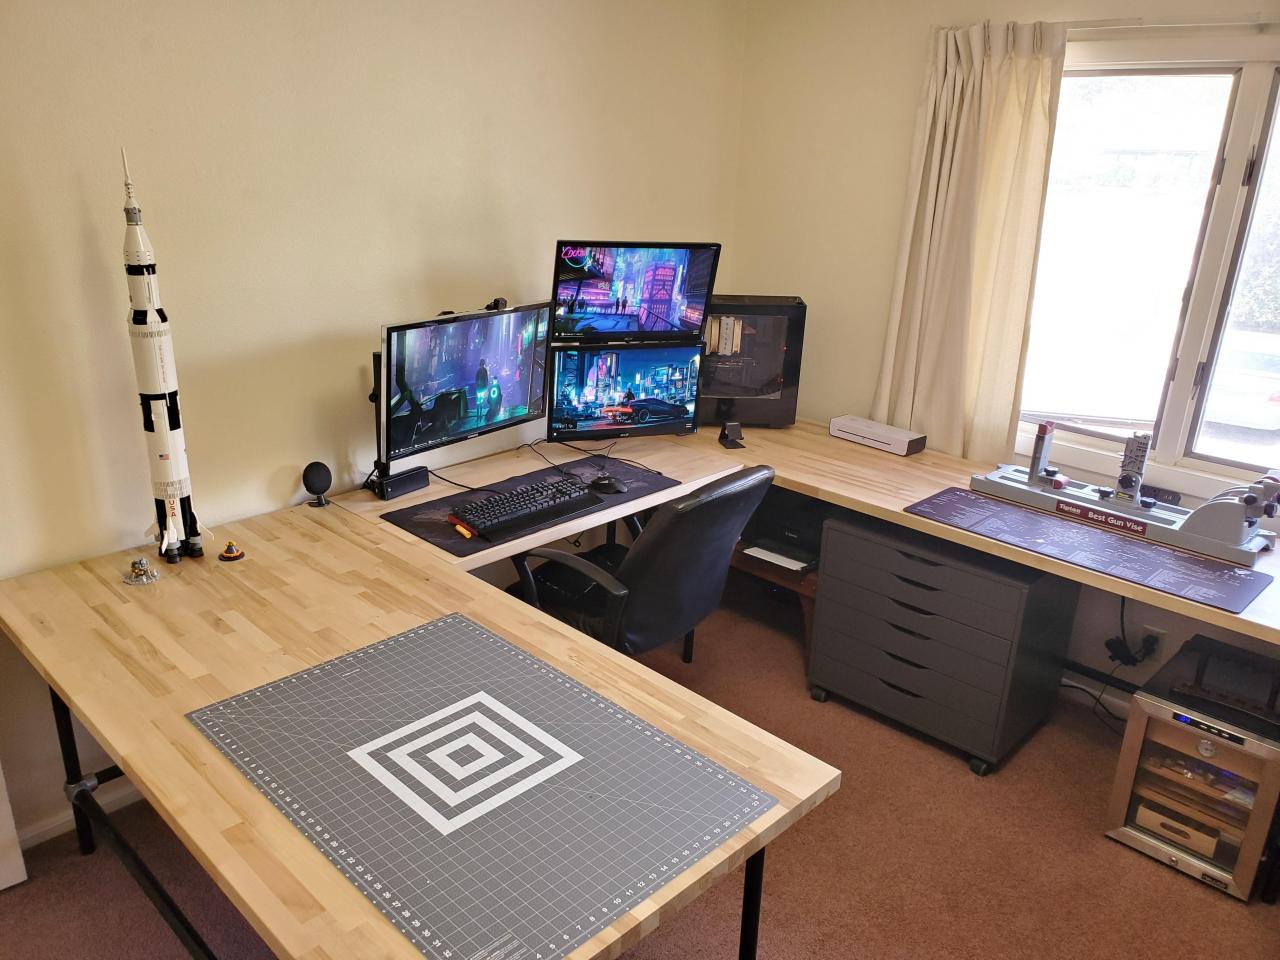 New U-Shaped Desk For The Battlestation | U Shaped Office Desk, Office  Furniture Layout, Home Office Design